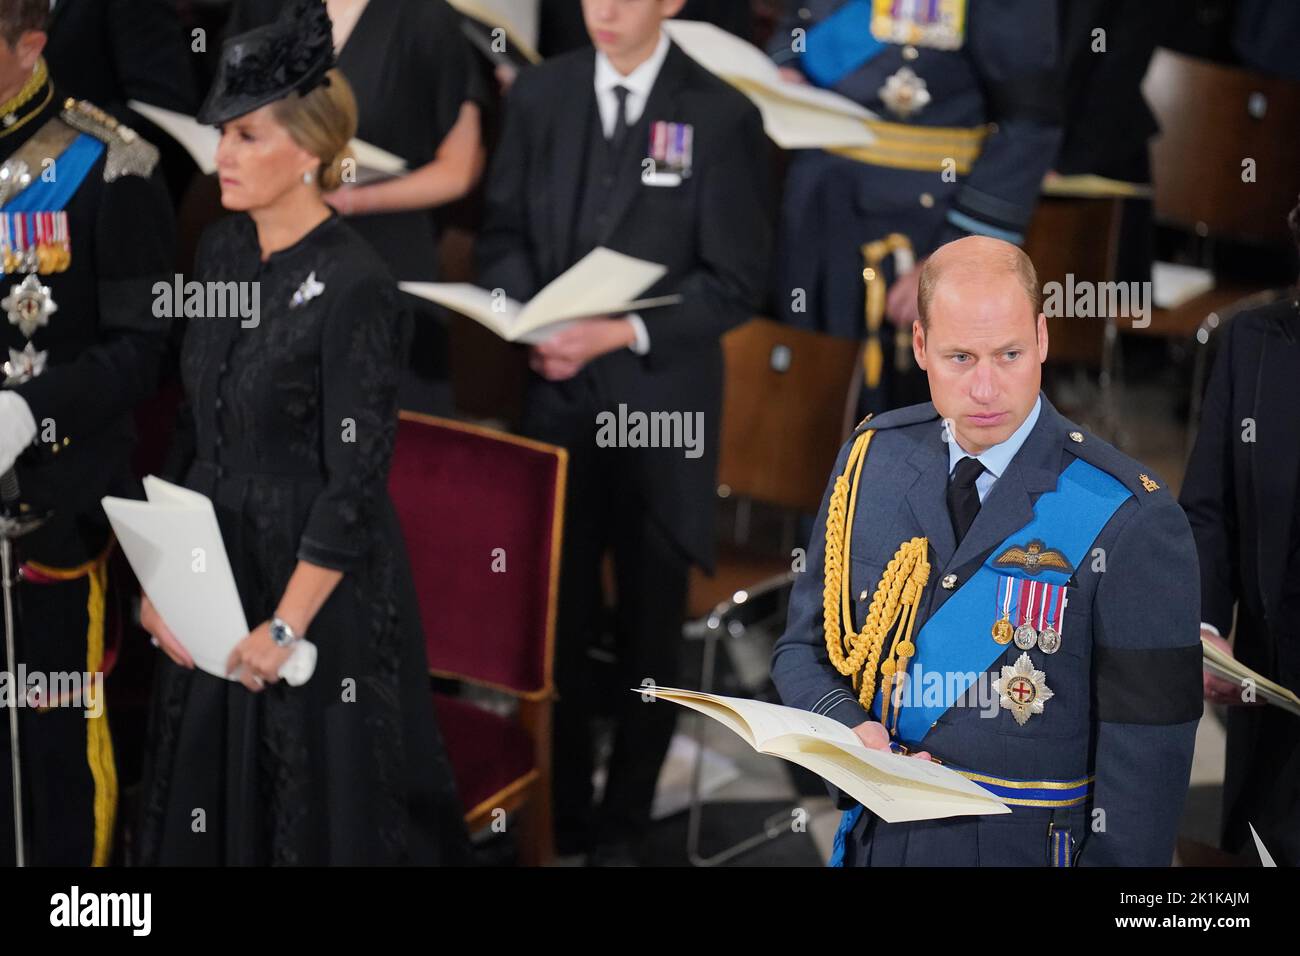 Il Principe di Galles durante il funerale statale della regina Elisabetta II presso l'Abbazia di Londra. Data immagine: Lunedì 19 settembre 2022. Foto Stock